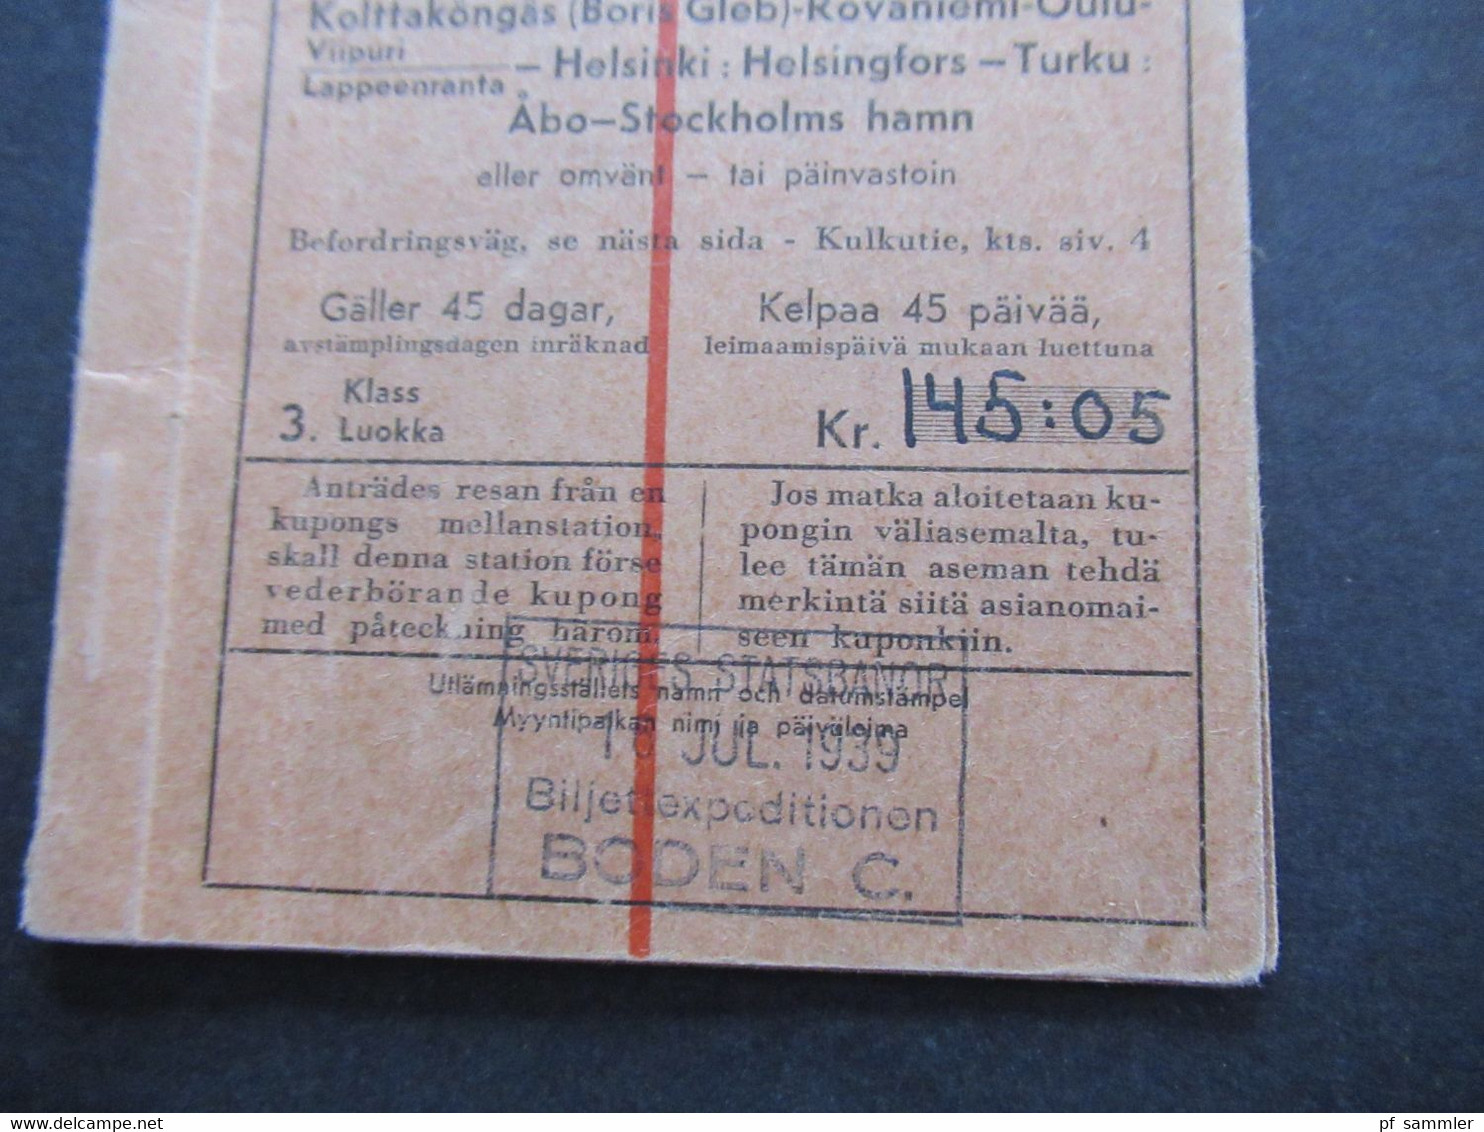 Schweden 1939 Rundtur T2 Bodens Central Nordisk Rundresetrafik Rundreise Ticket Ab Stockholm Zug / Schiff?? - Europe